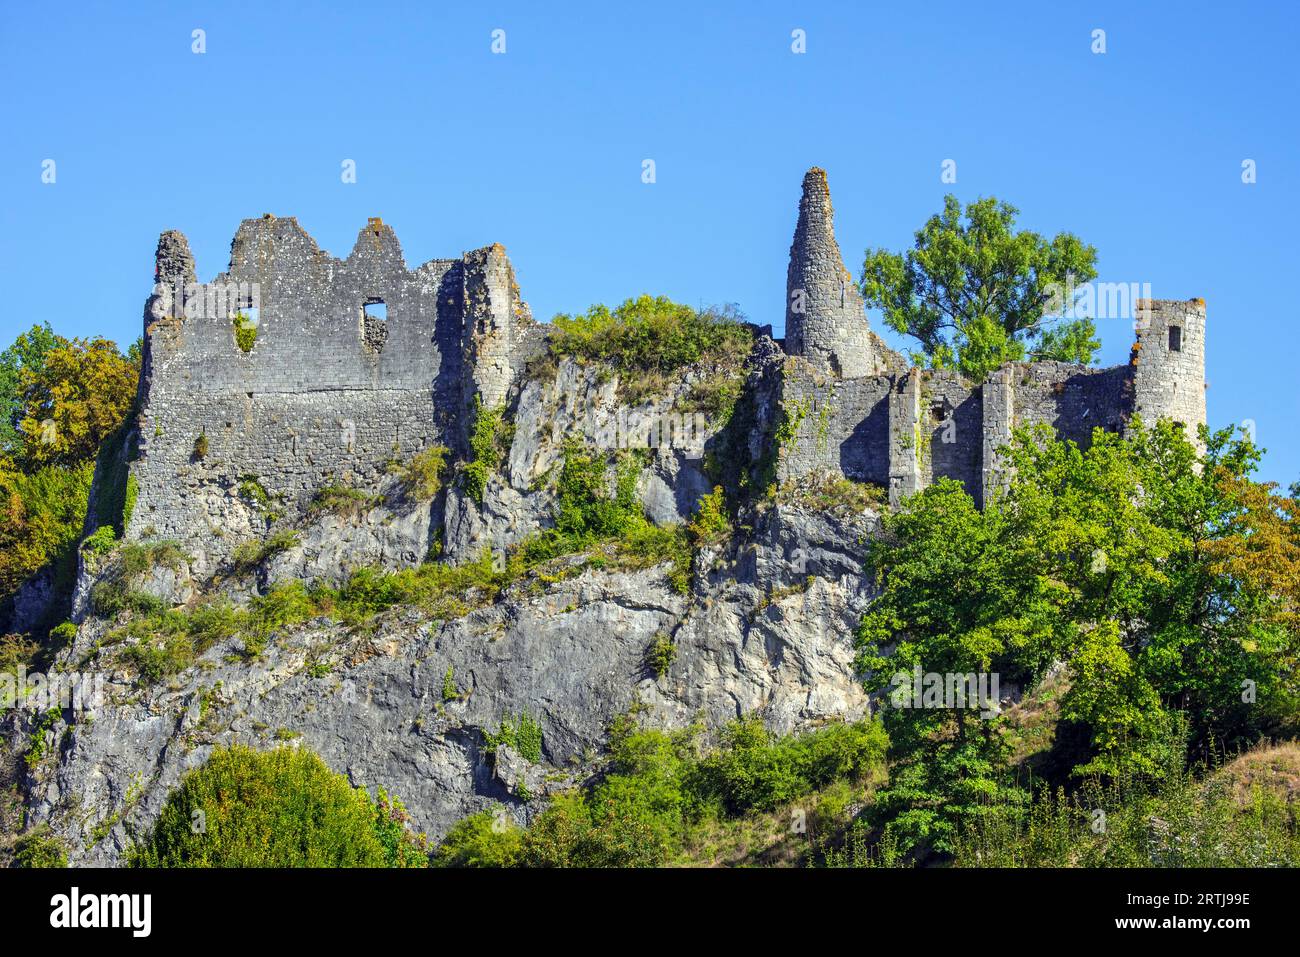 Château de Montaigle en été, château médiéval en ruine du 14e siècle à Falaën, Onhaye, province de Namur, Wallonie, Ardennes belges, Belgique Banque D'Images